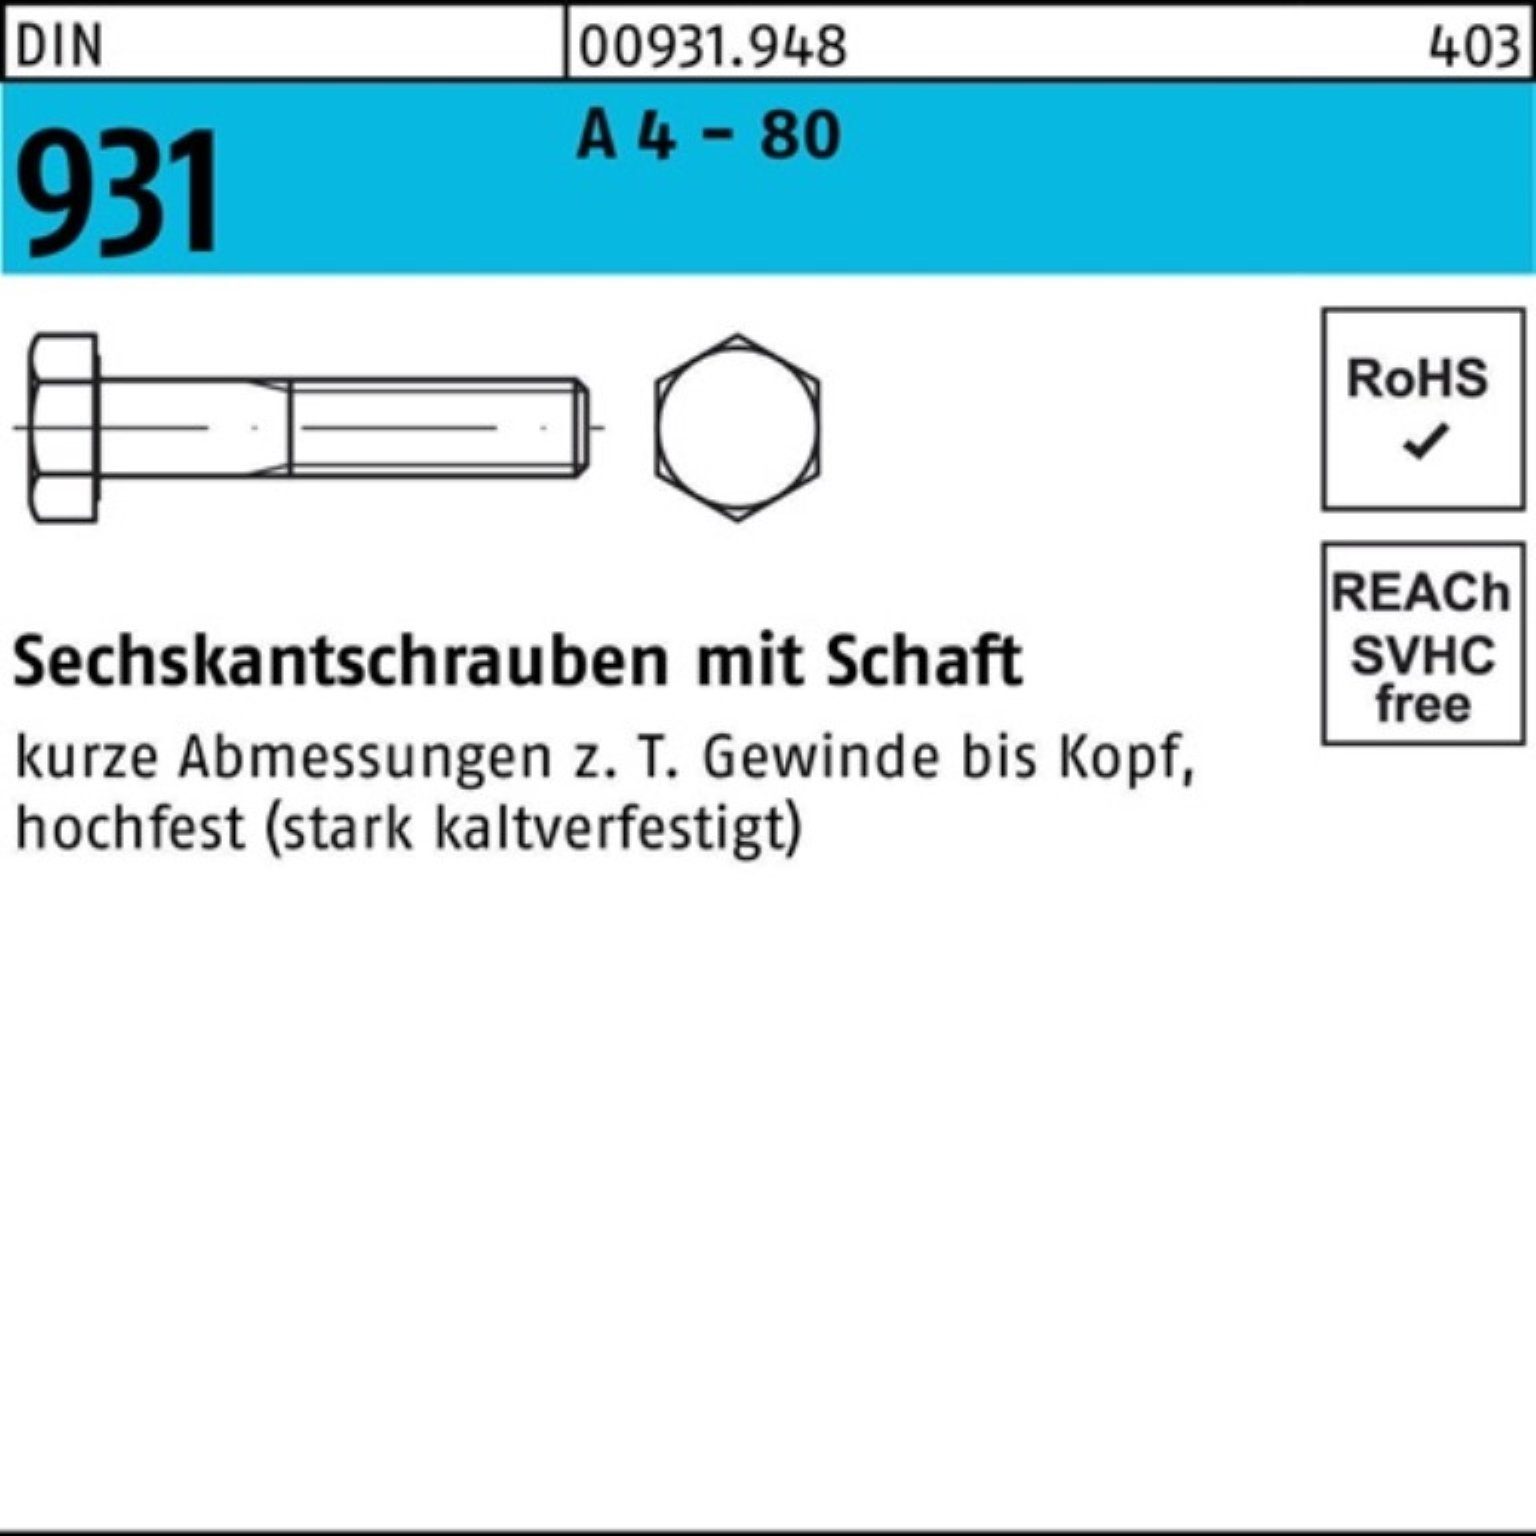 A DIN - Stück 931 Schaft 1 200 M16x Pack Sechskantschraube 4 Sechskantschraube Reyher 80 100er